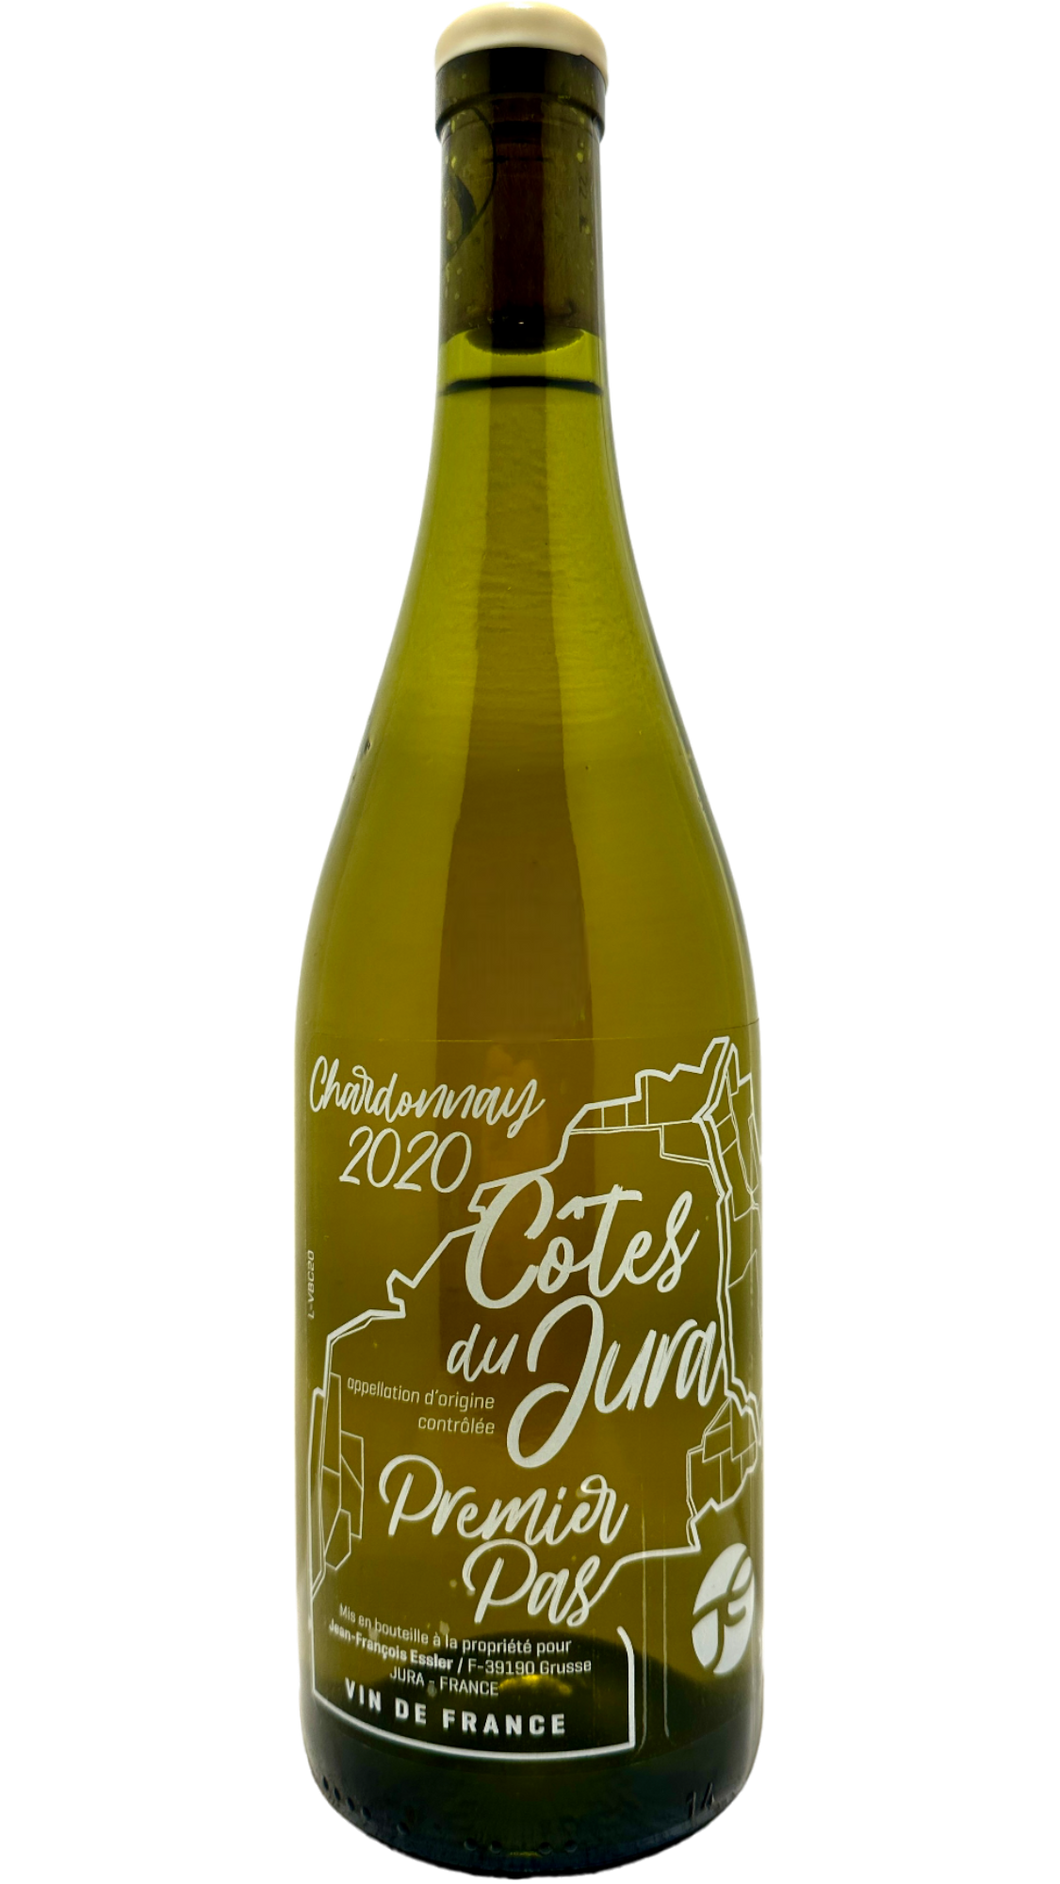 Côtes du jura chardonnay Premier pas jean-françois Essler